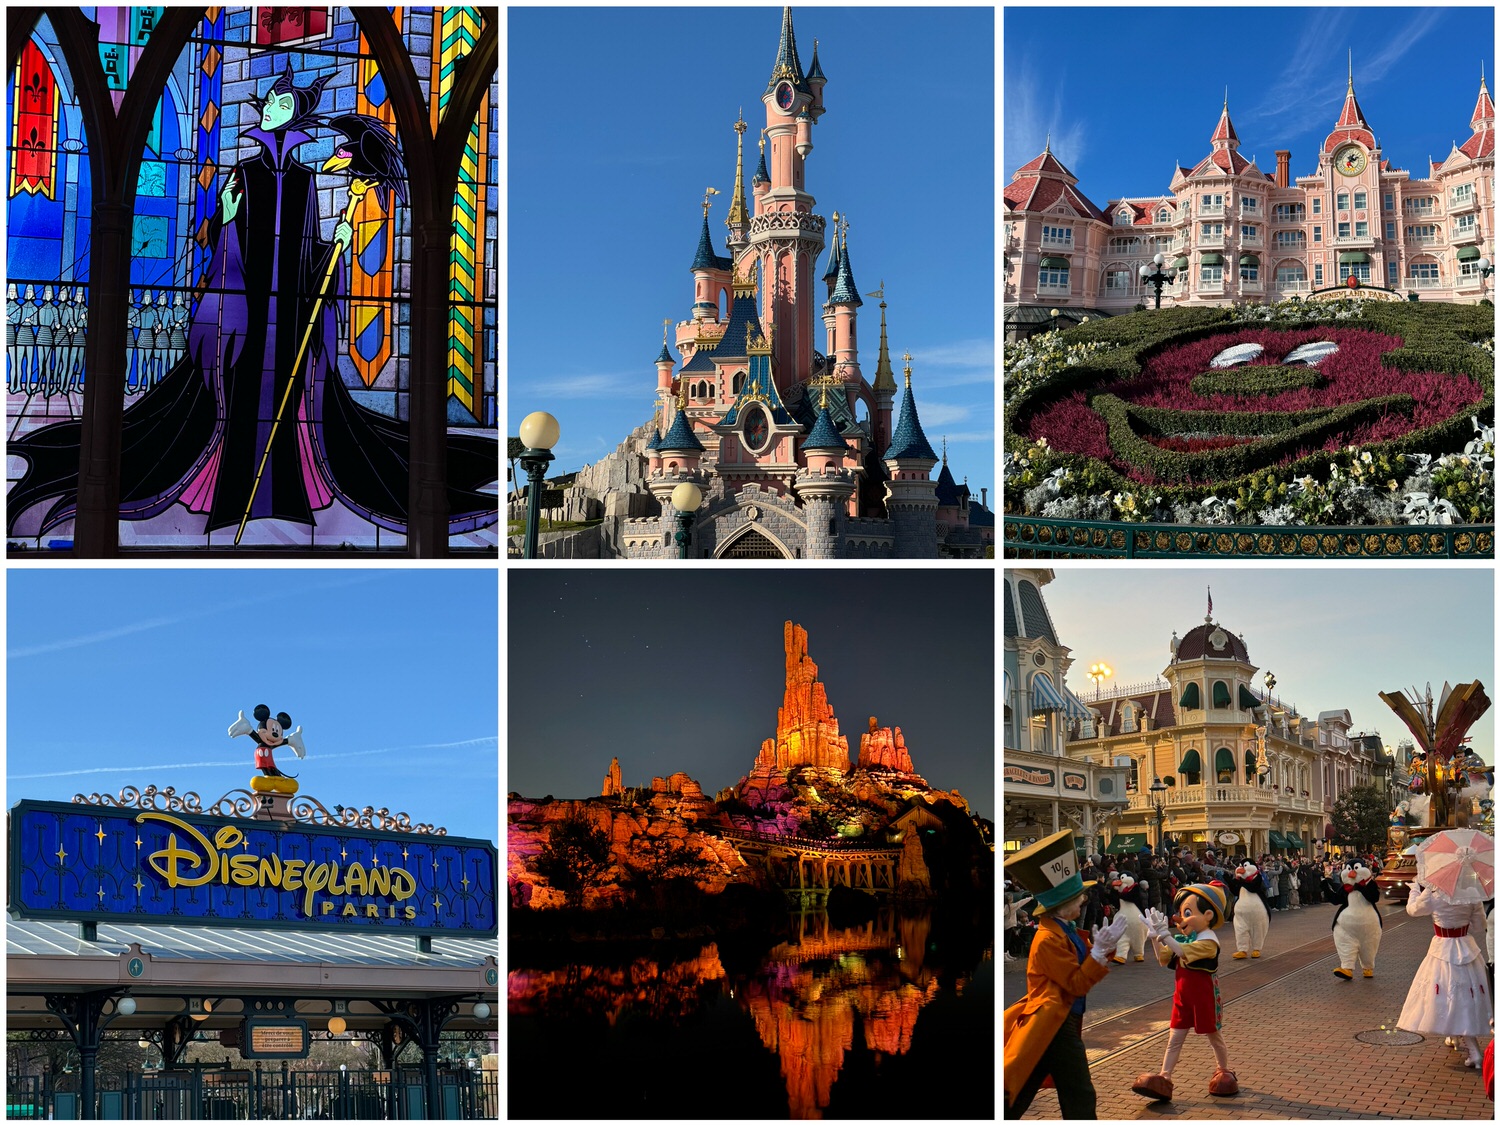 巴黎迪士尼Disneyland Paris｜兩大園區懶人包、交通、完整攻略、票種介紹
巴黎迪士尼樂園(Disneyland Park)
華特迪士尼影城(Walt Disney Studios Park)